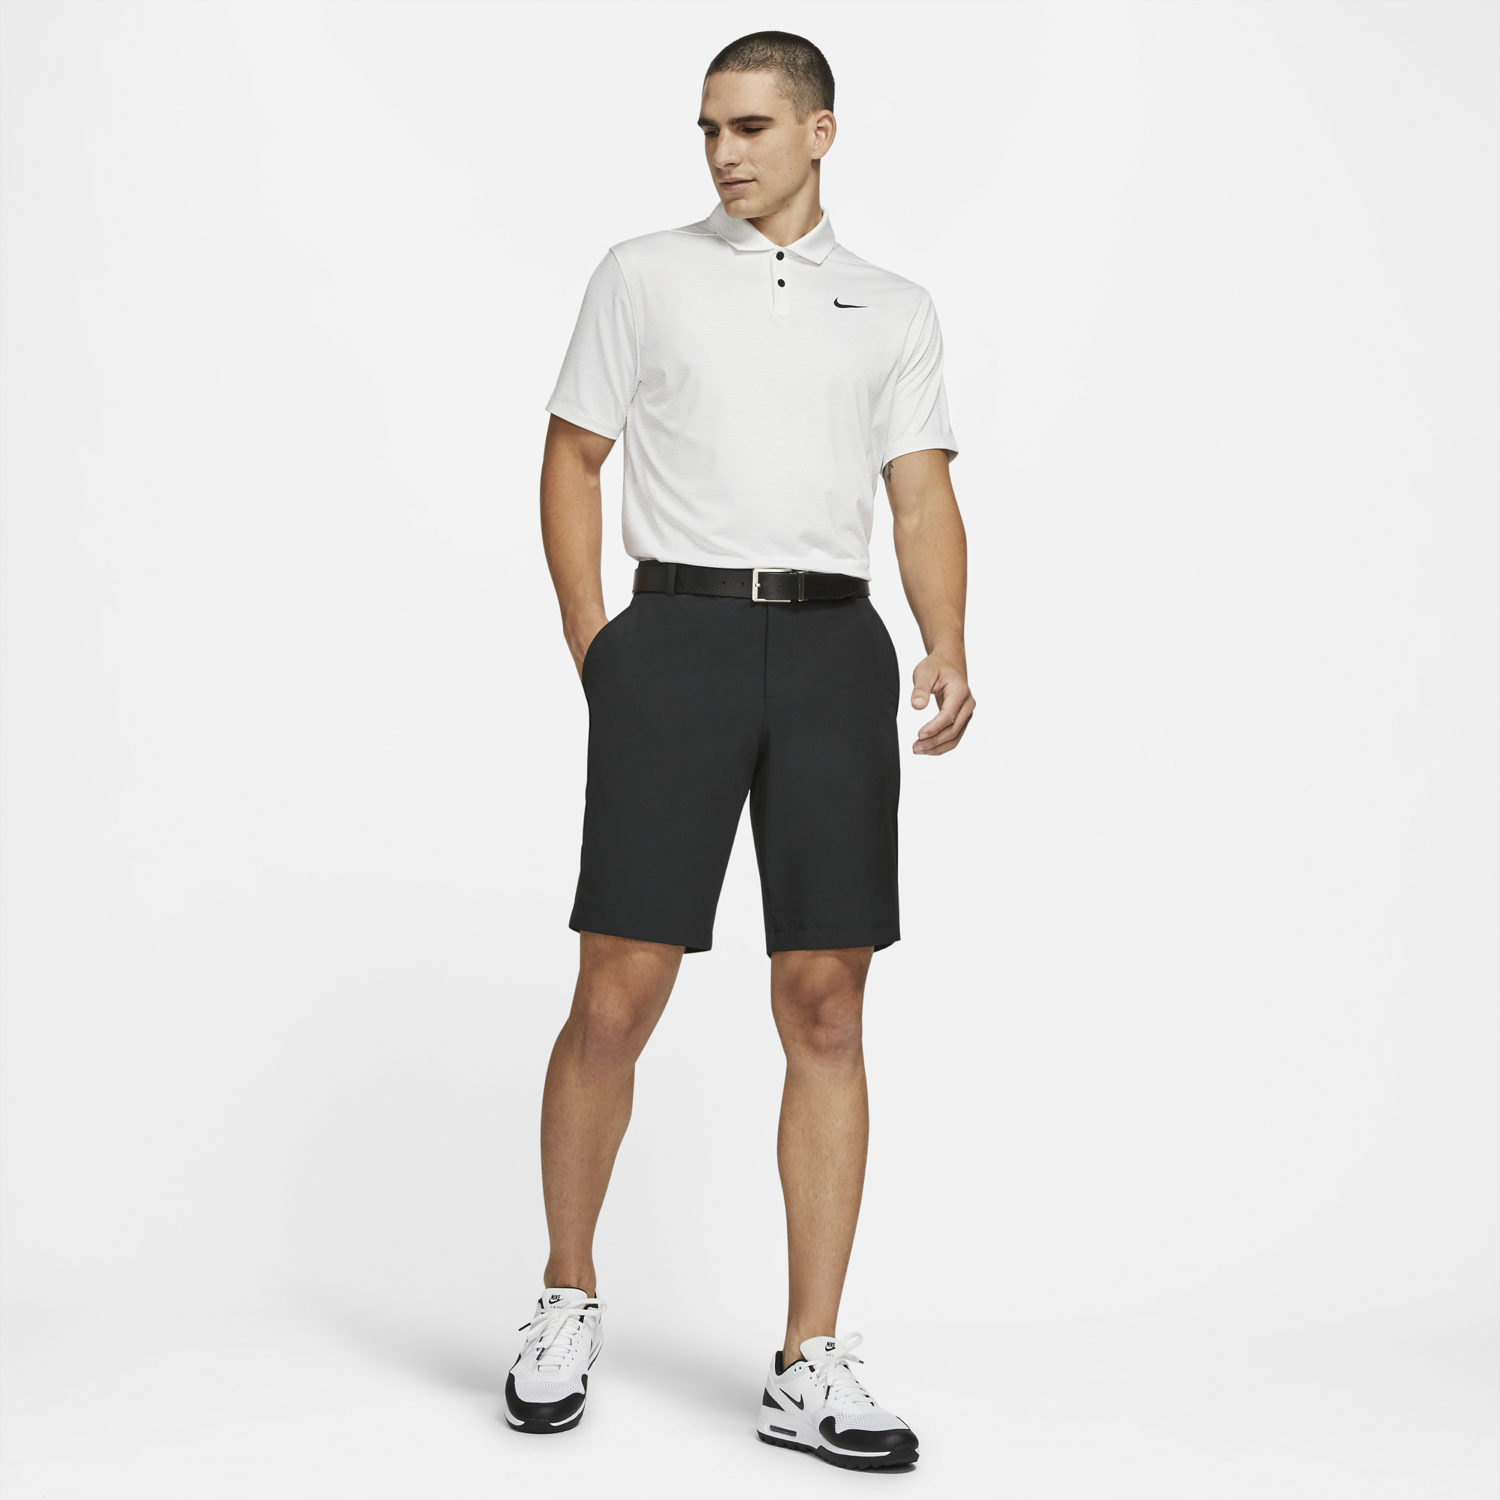 Nike Hybrid Golf Shorts Black | Scottsdale Golf